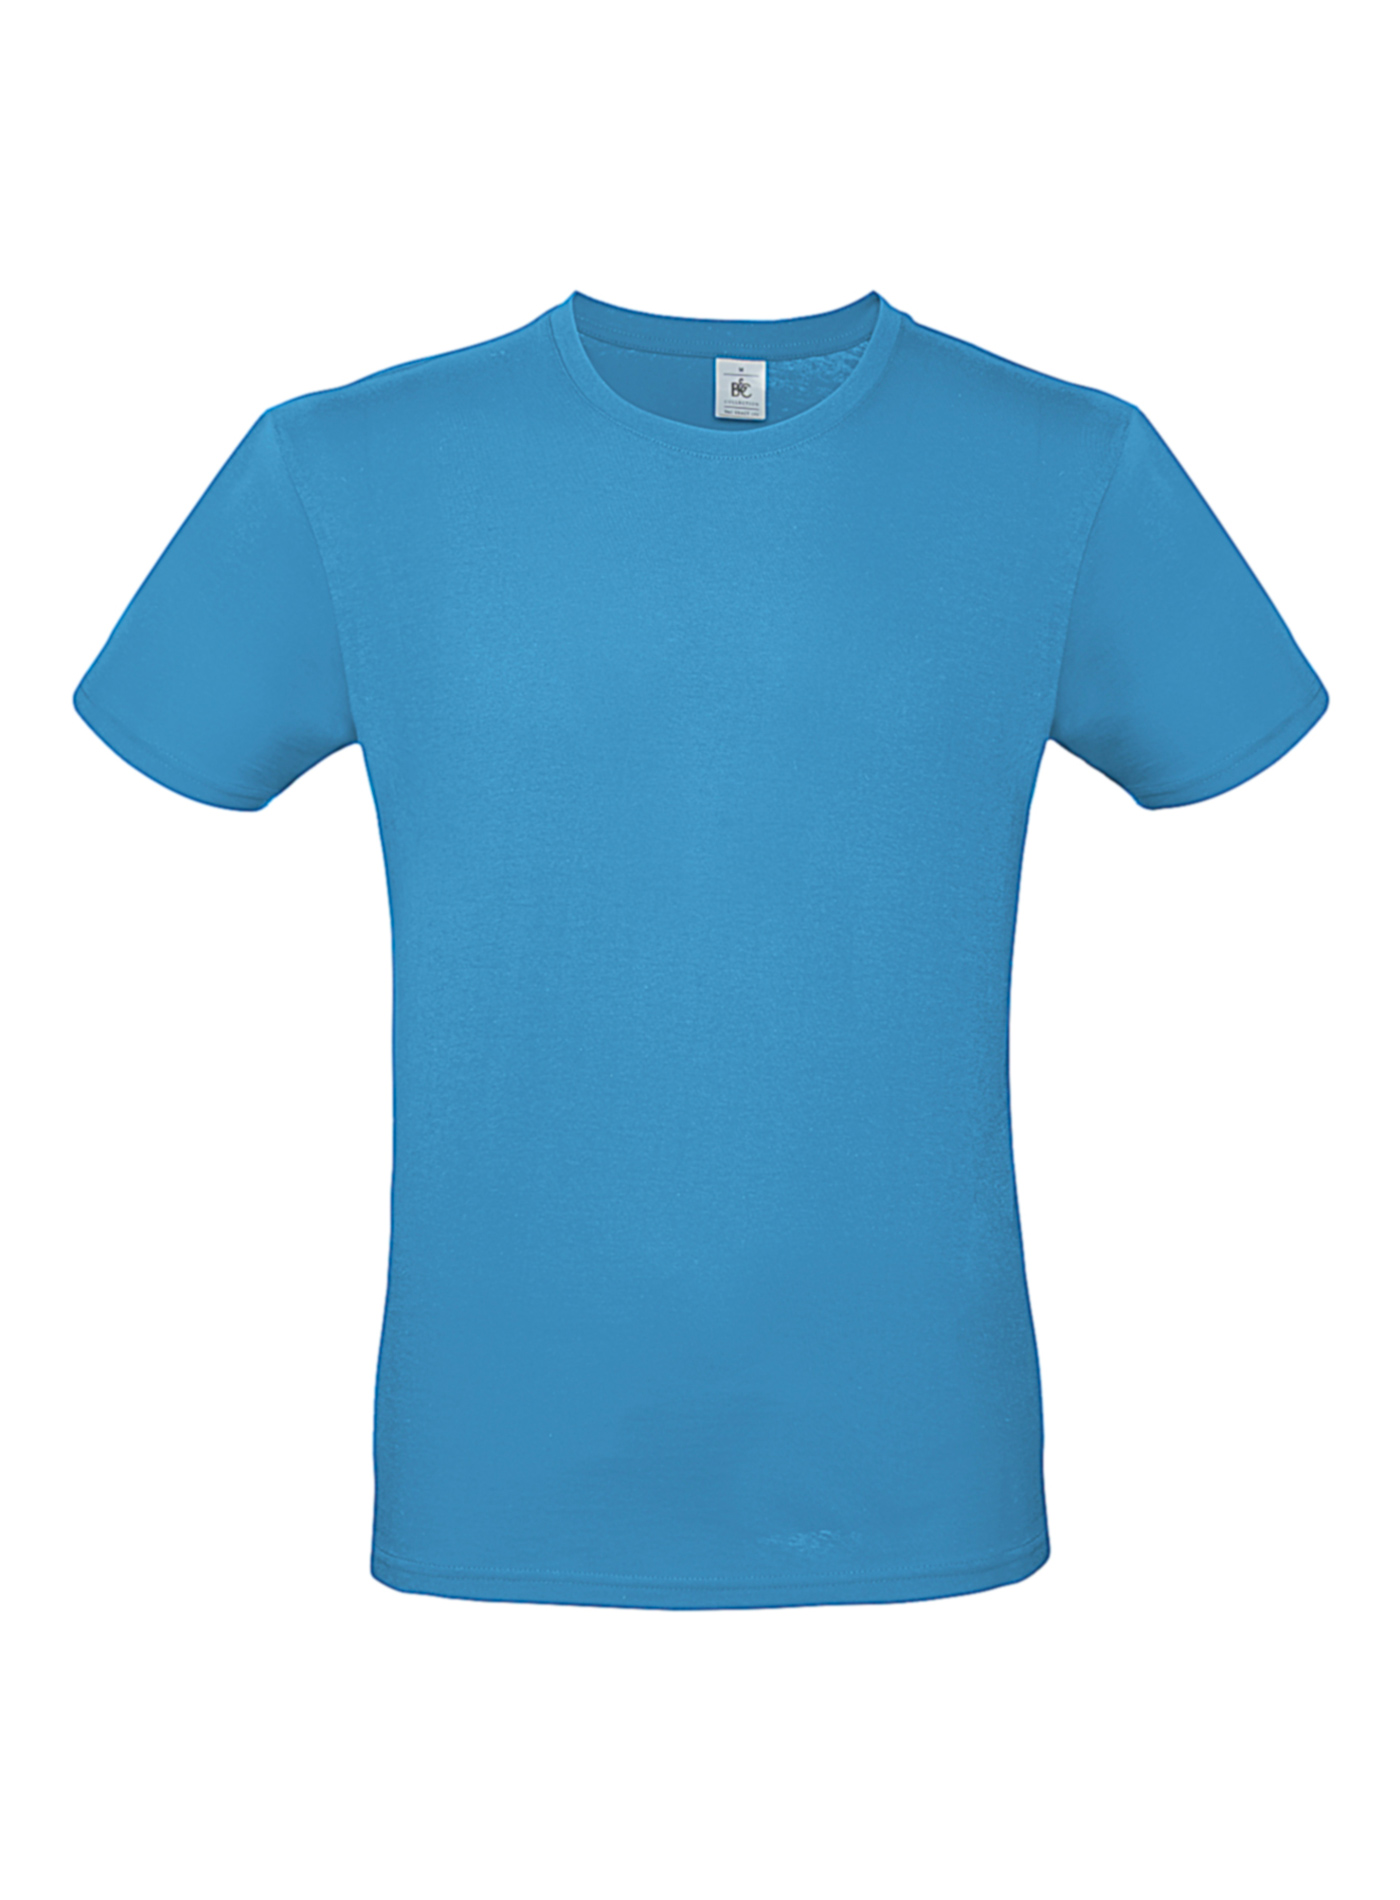 Pánské tričko B&C - Blankytně modrá 3XL